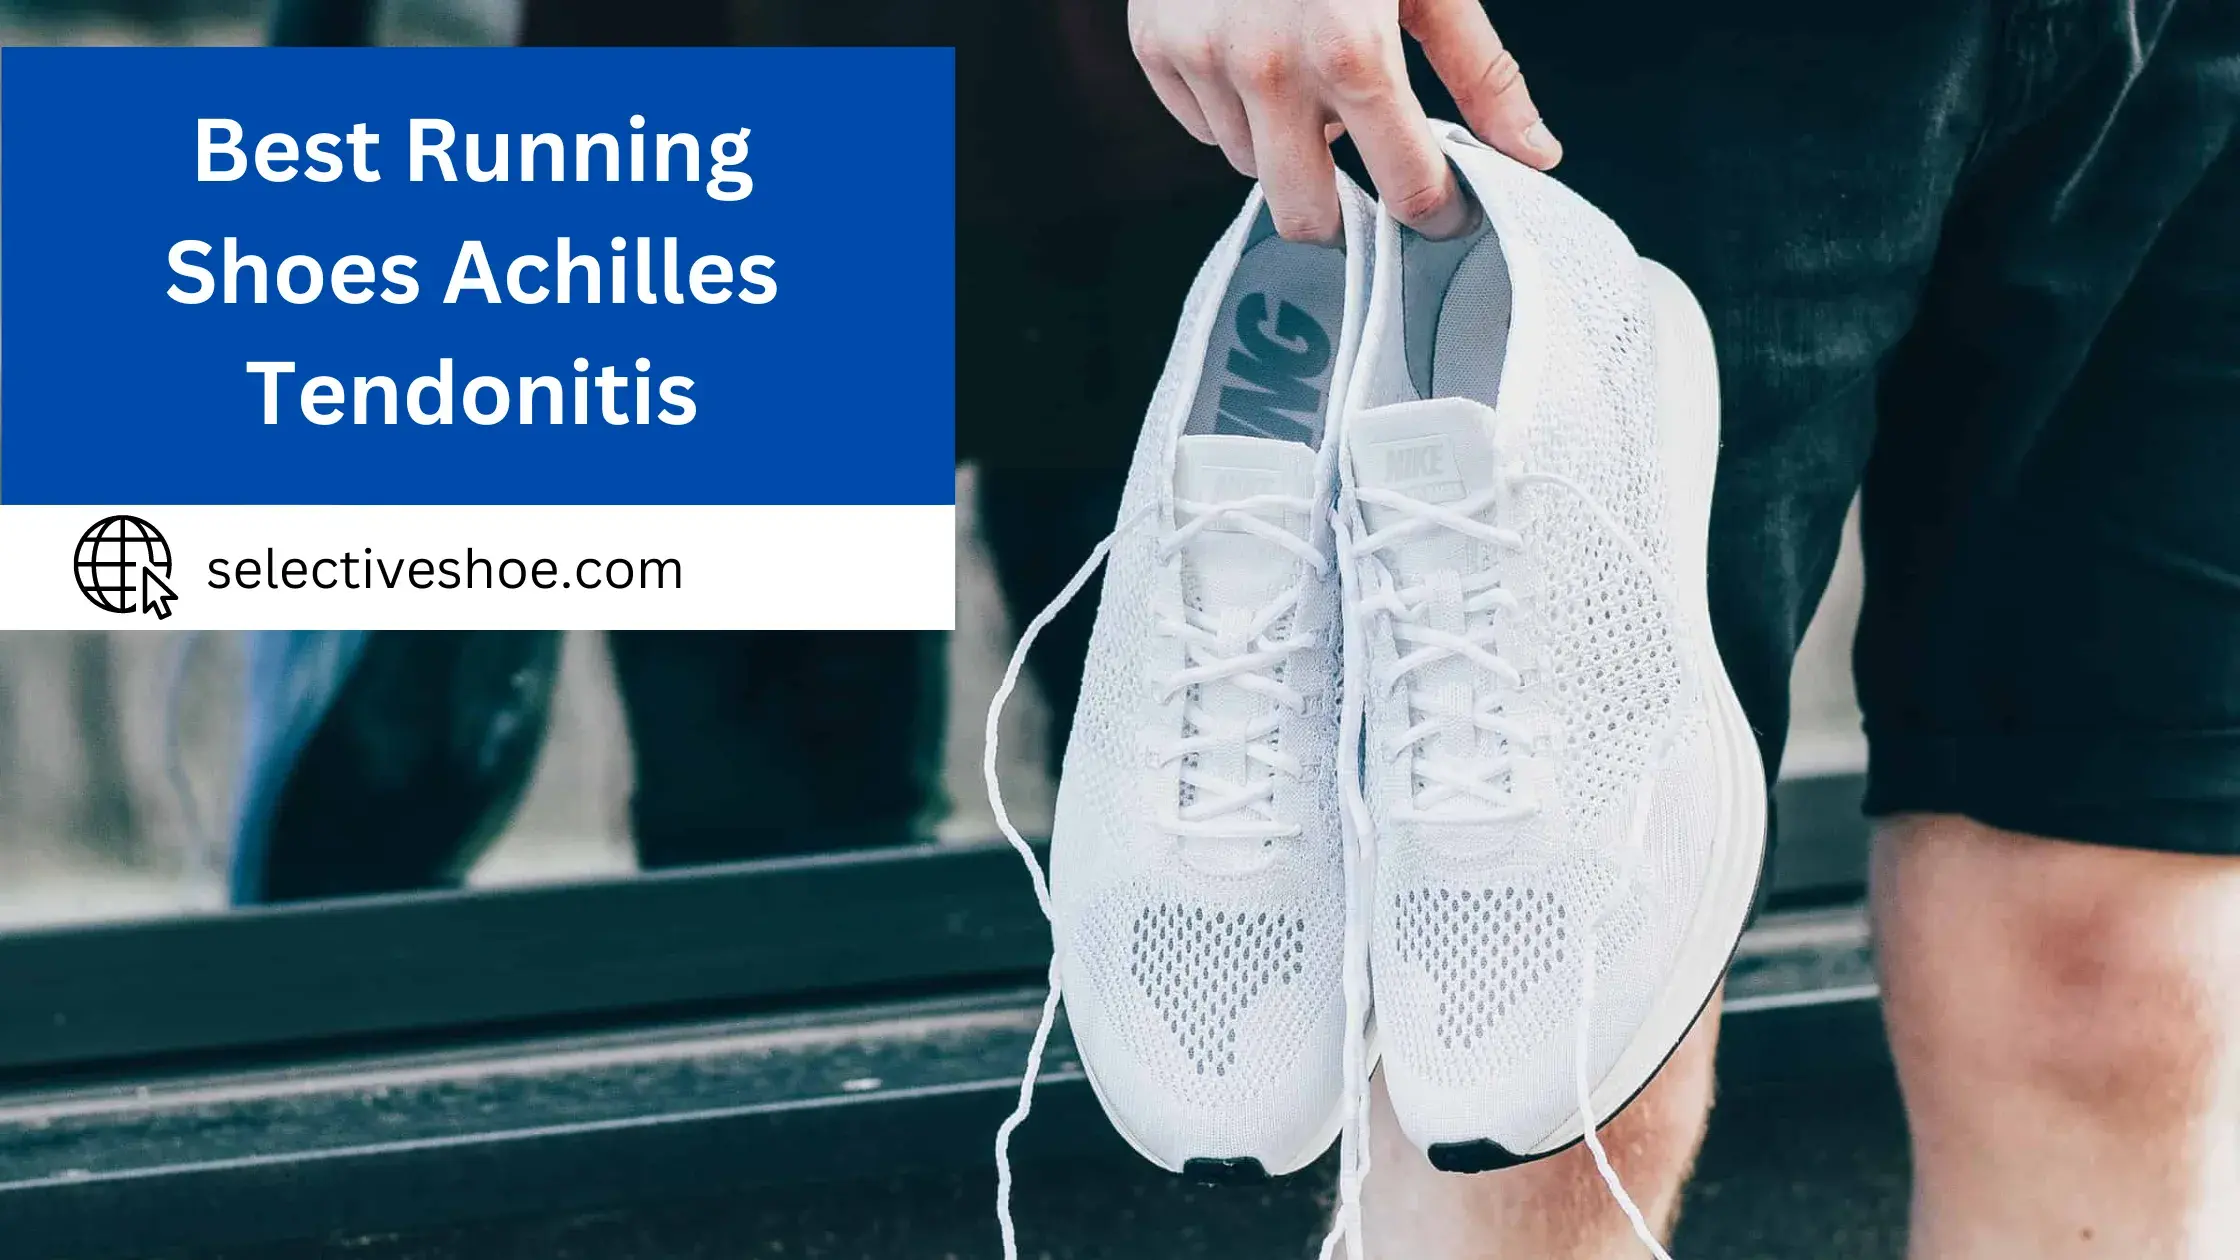 Best Running Shoes Achilles Tendonitis - Expert Choice